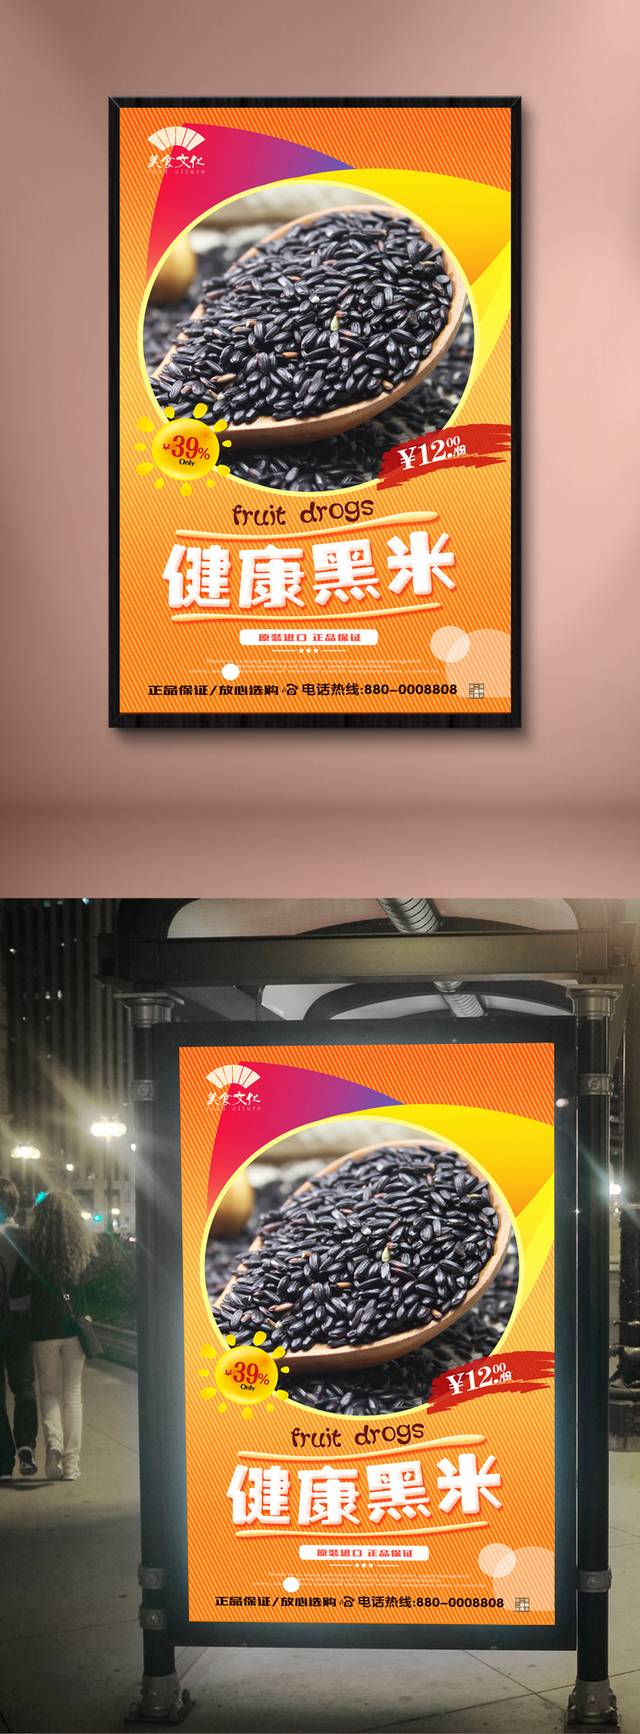 高清米店黑米海报设计